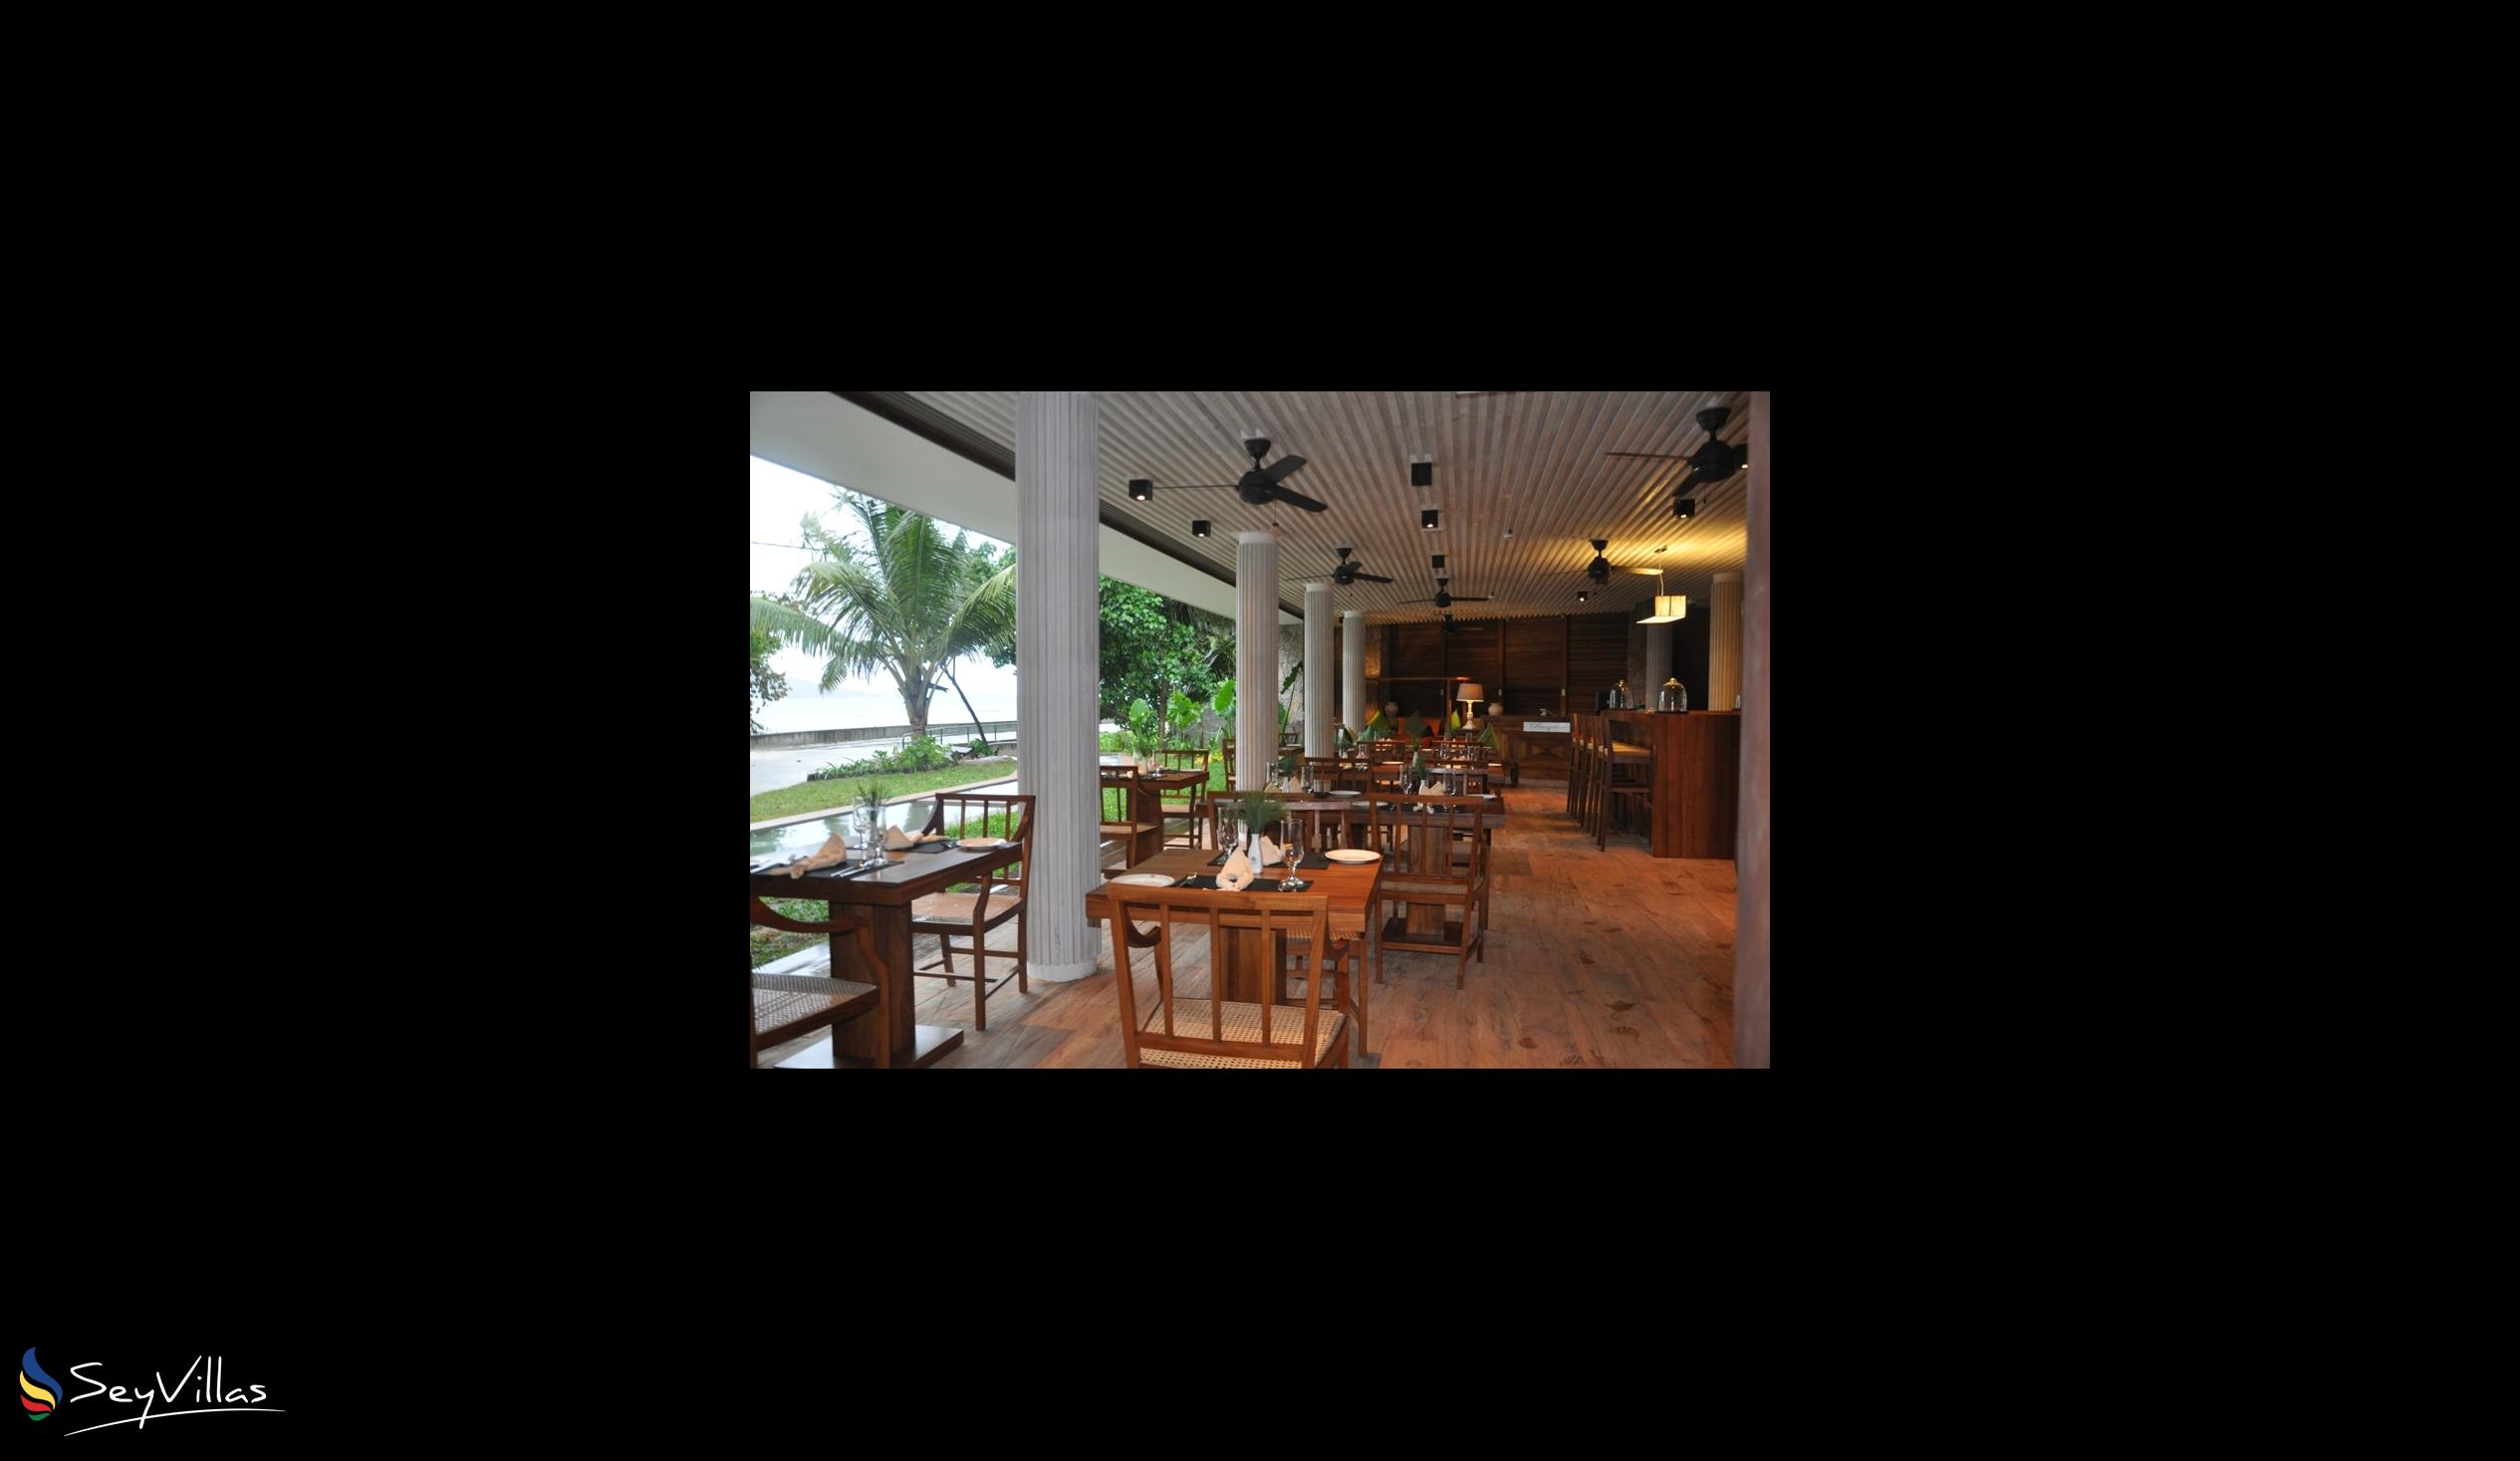 Foto 6: Le Relax Luxury Lodge - Aussenbereich - La Digue (Seychellen)